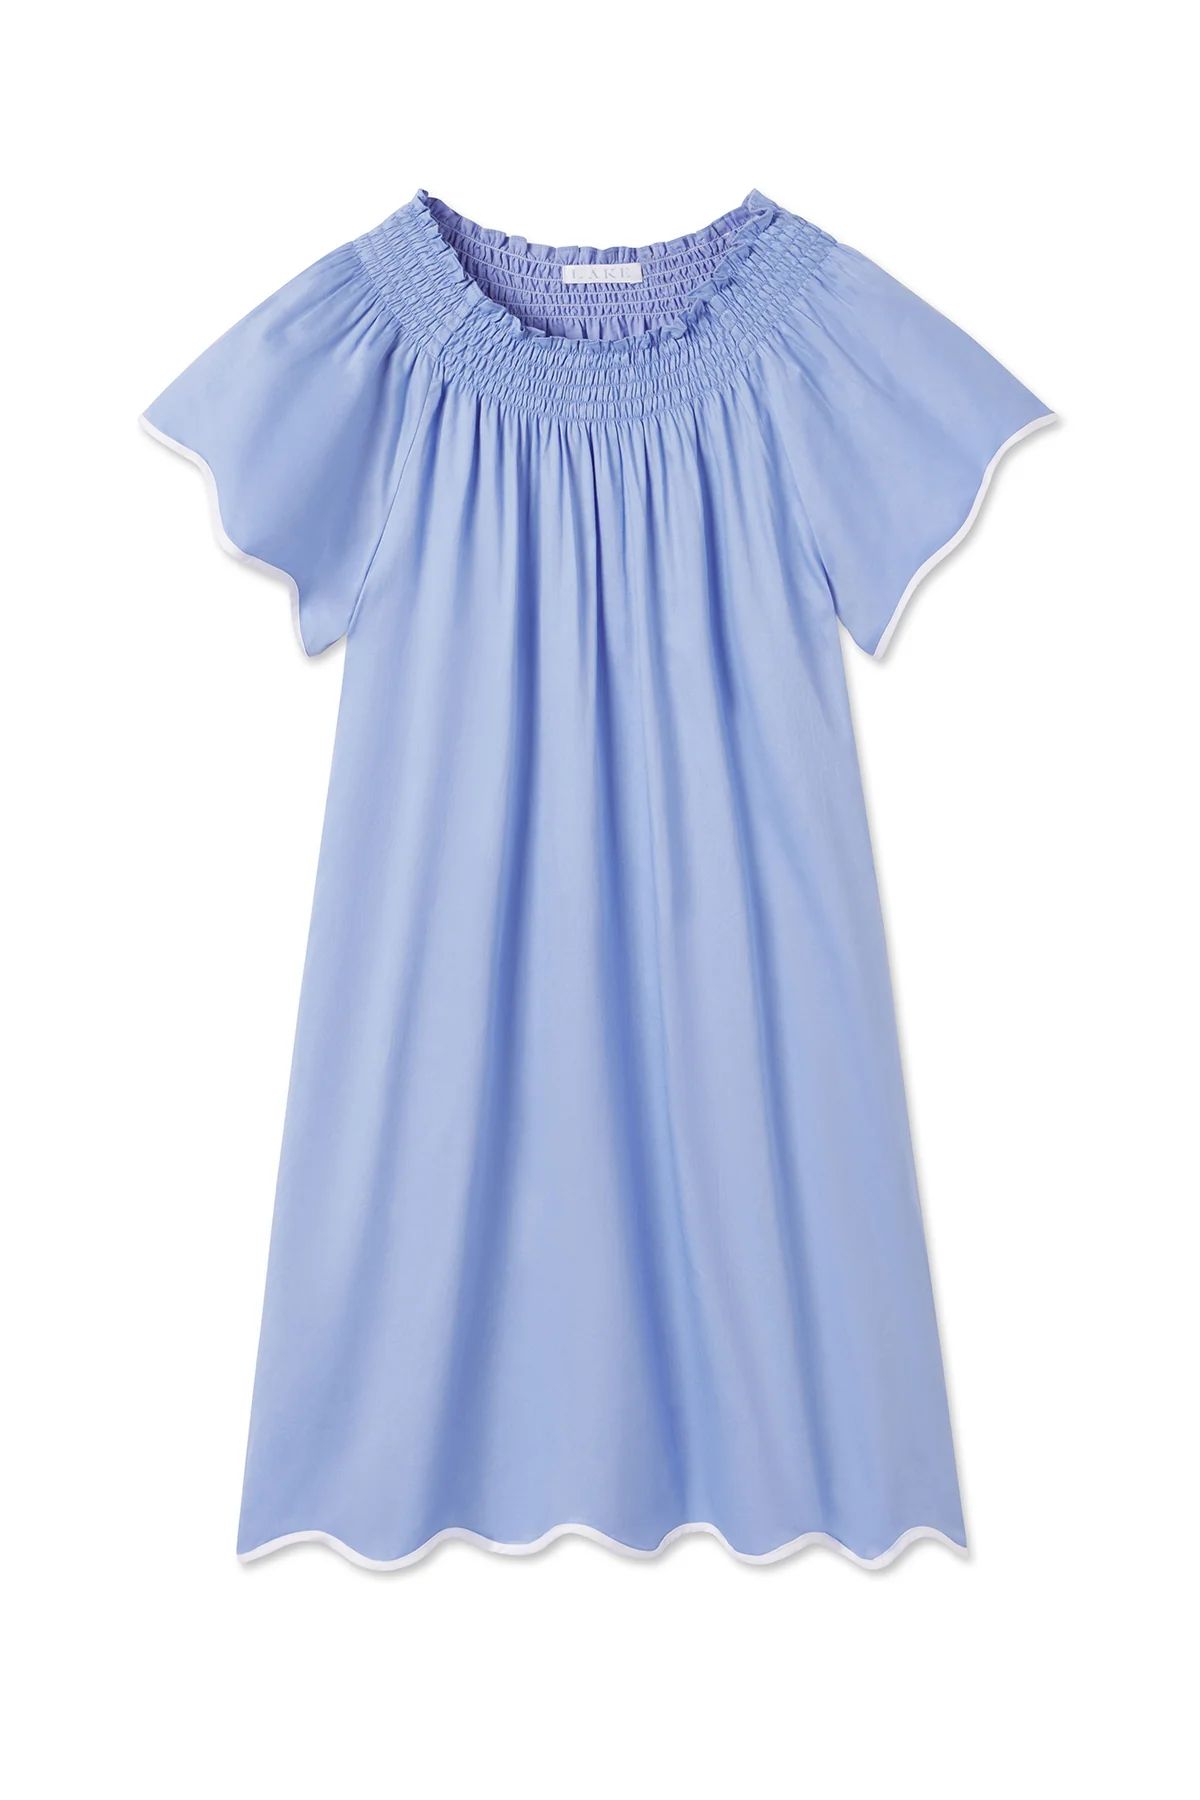 Patio Dress in Hydrangea | Lake Pajamas